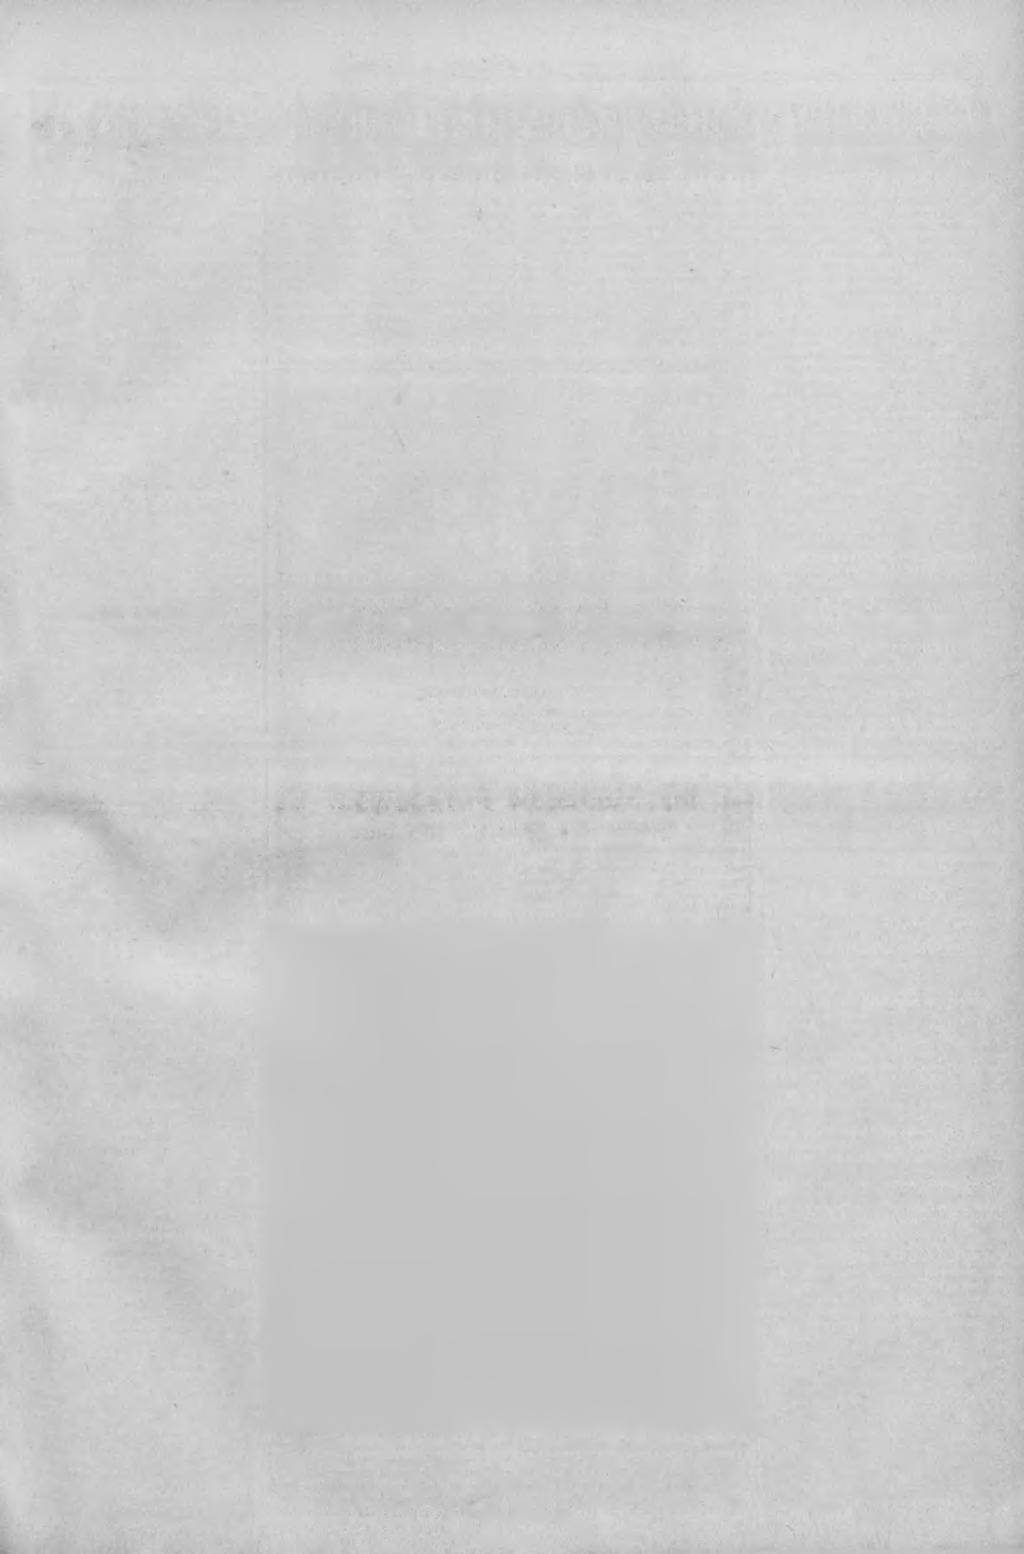 Nr. 24 SLĄSKI KURJER PORANNY" 25 stycznia 1936 roku Strona 3 Aby opanować bezrobocie trzeba skrócić czas pracy Warszawa. Po przemówieniu p.